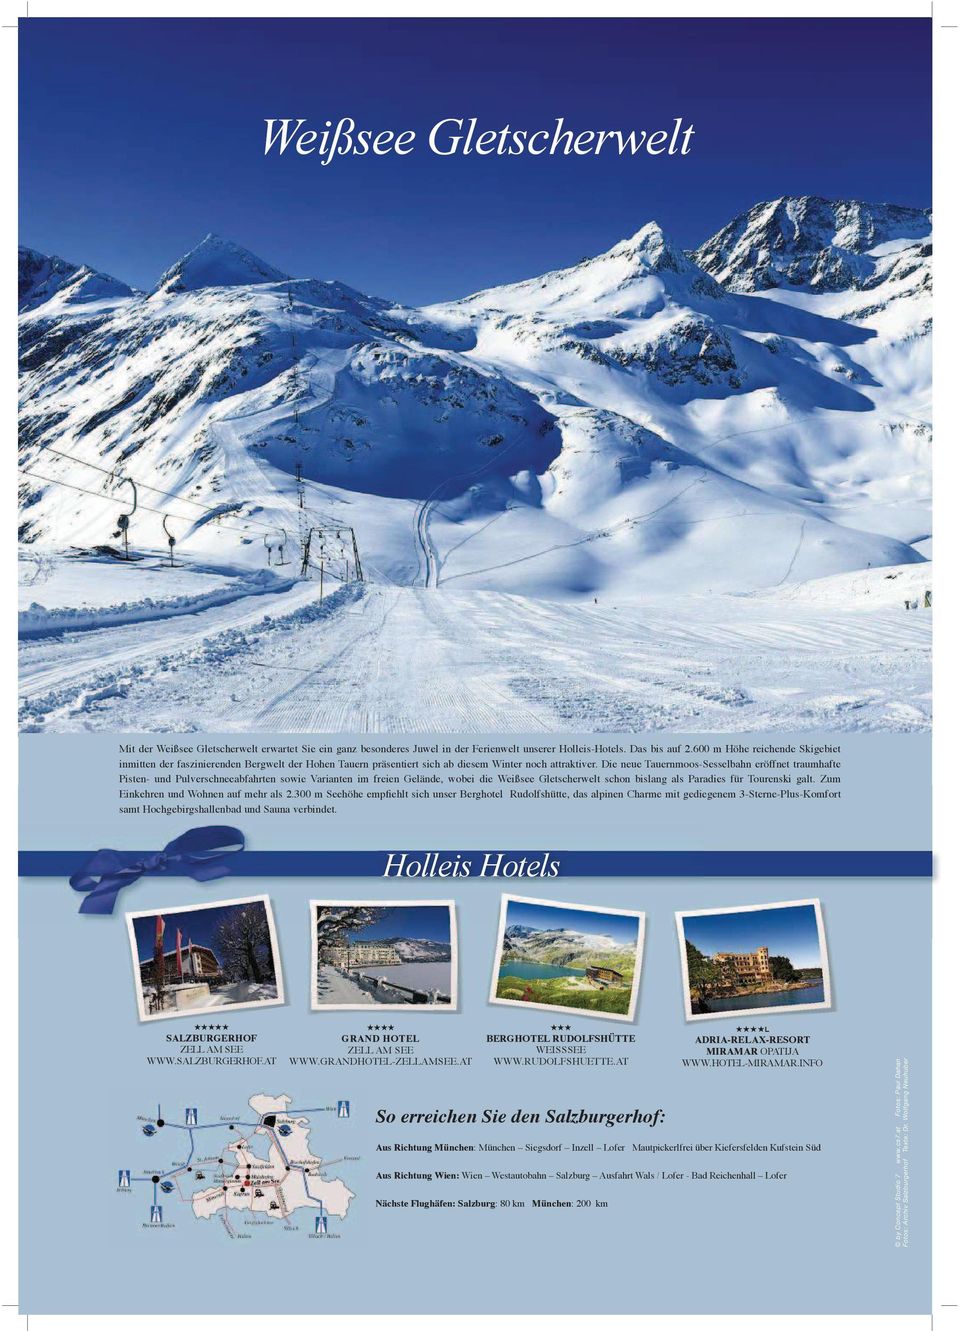 Die neue Tauernmoos-Sesselbahn eröffnet traumhafte Pisten- und Pulverschneeabfahrten sowie Varianten im freien Gelände, wobei die Weißsee Gletscherwelt schon bislang als Paradies für Tourenski galt.